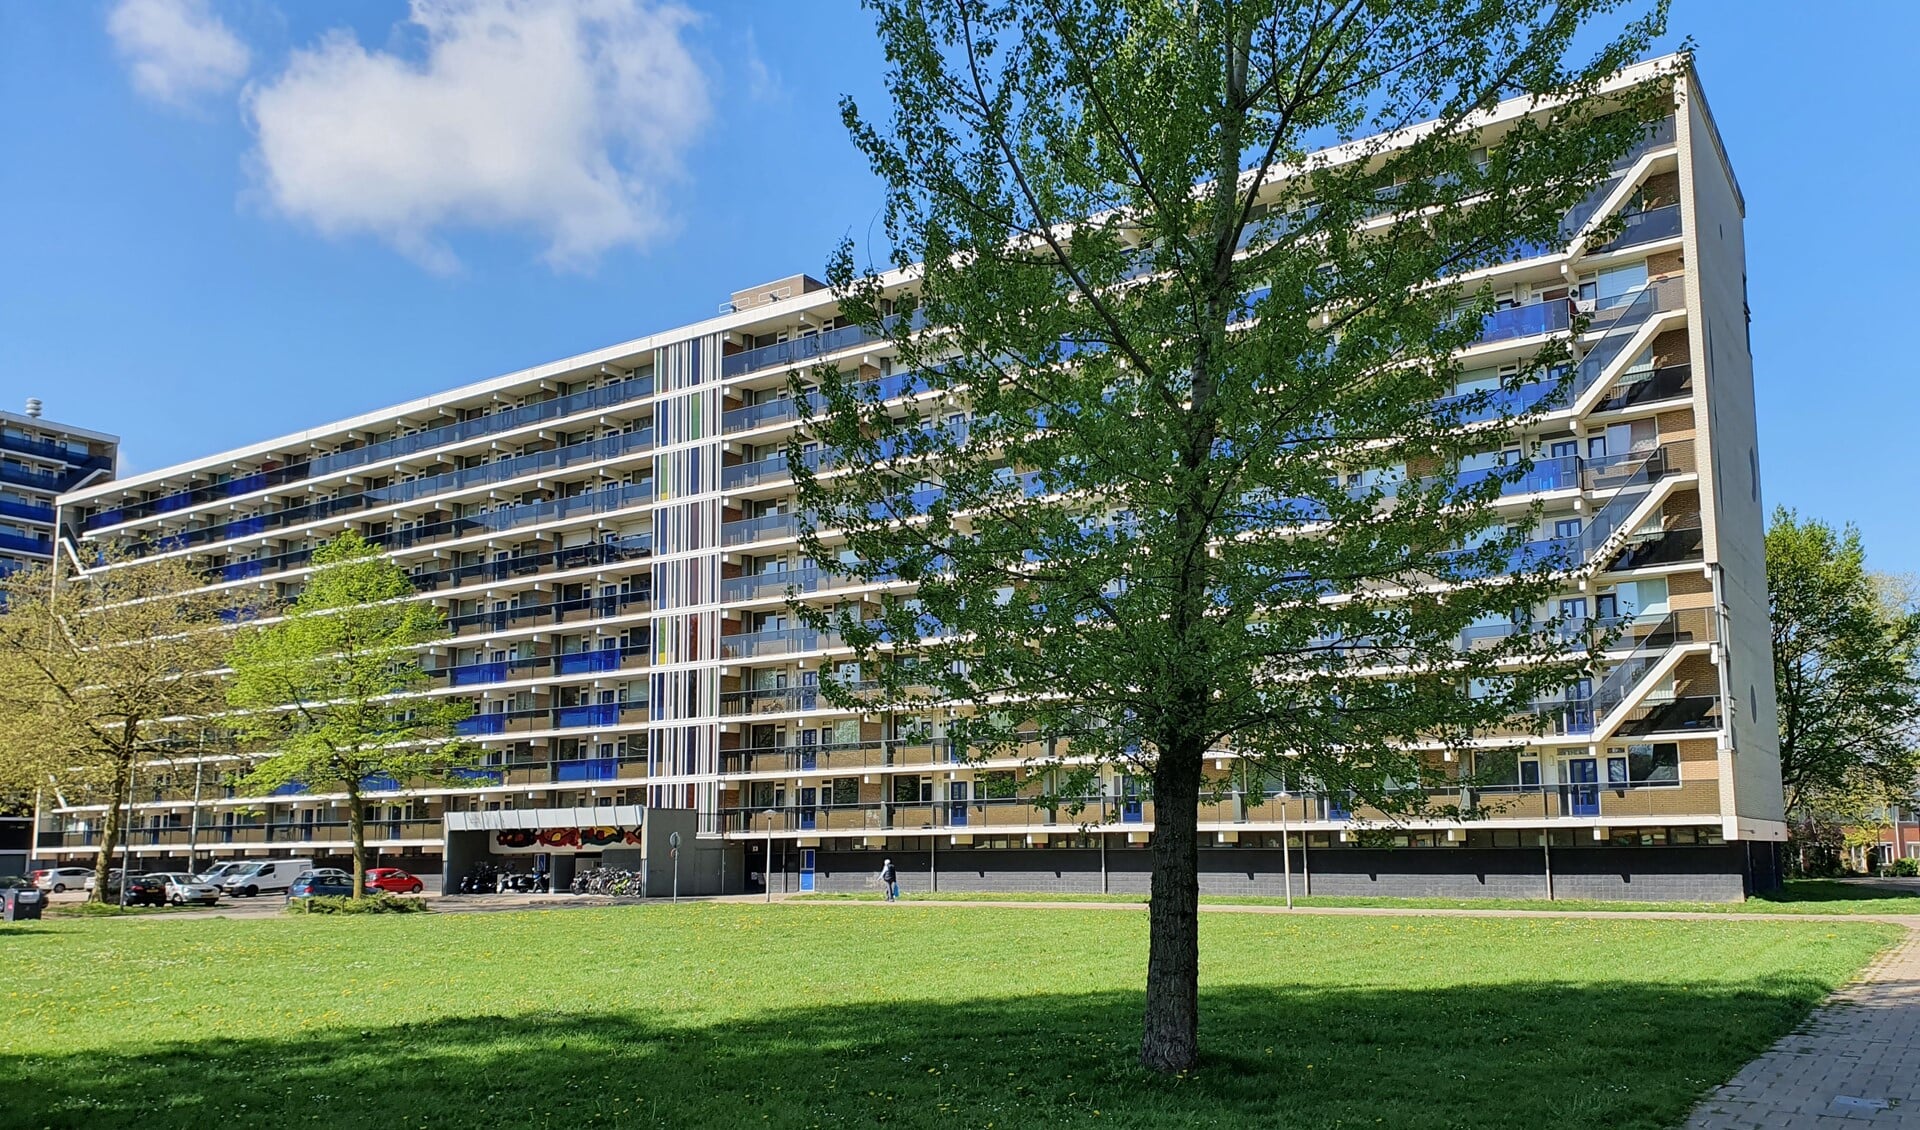 Woningcorporatie Volkshuisvesting Arnhem gaat aan het Brandenburgseplein en Kleefseplein in totaal 456 woningen renoveren.